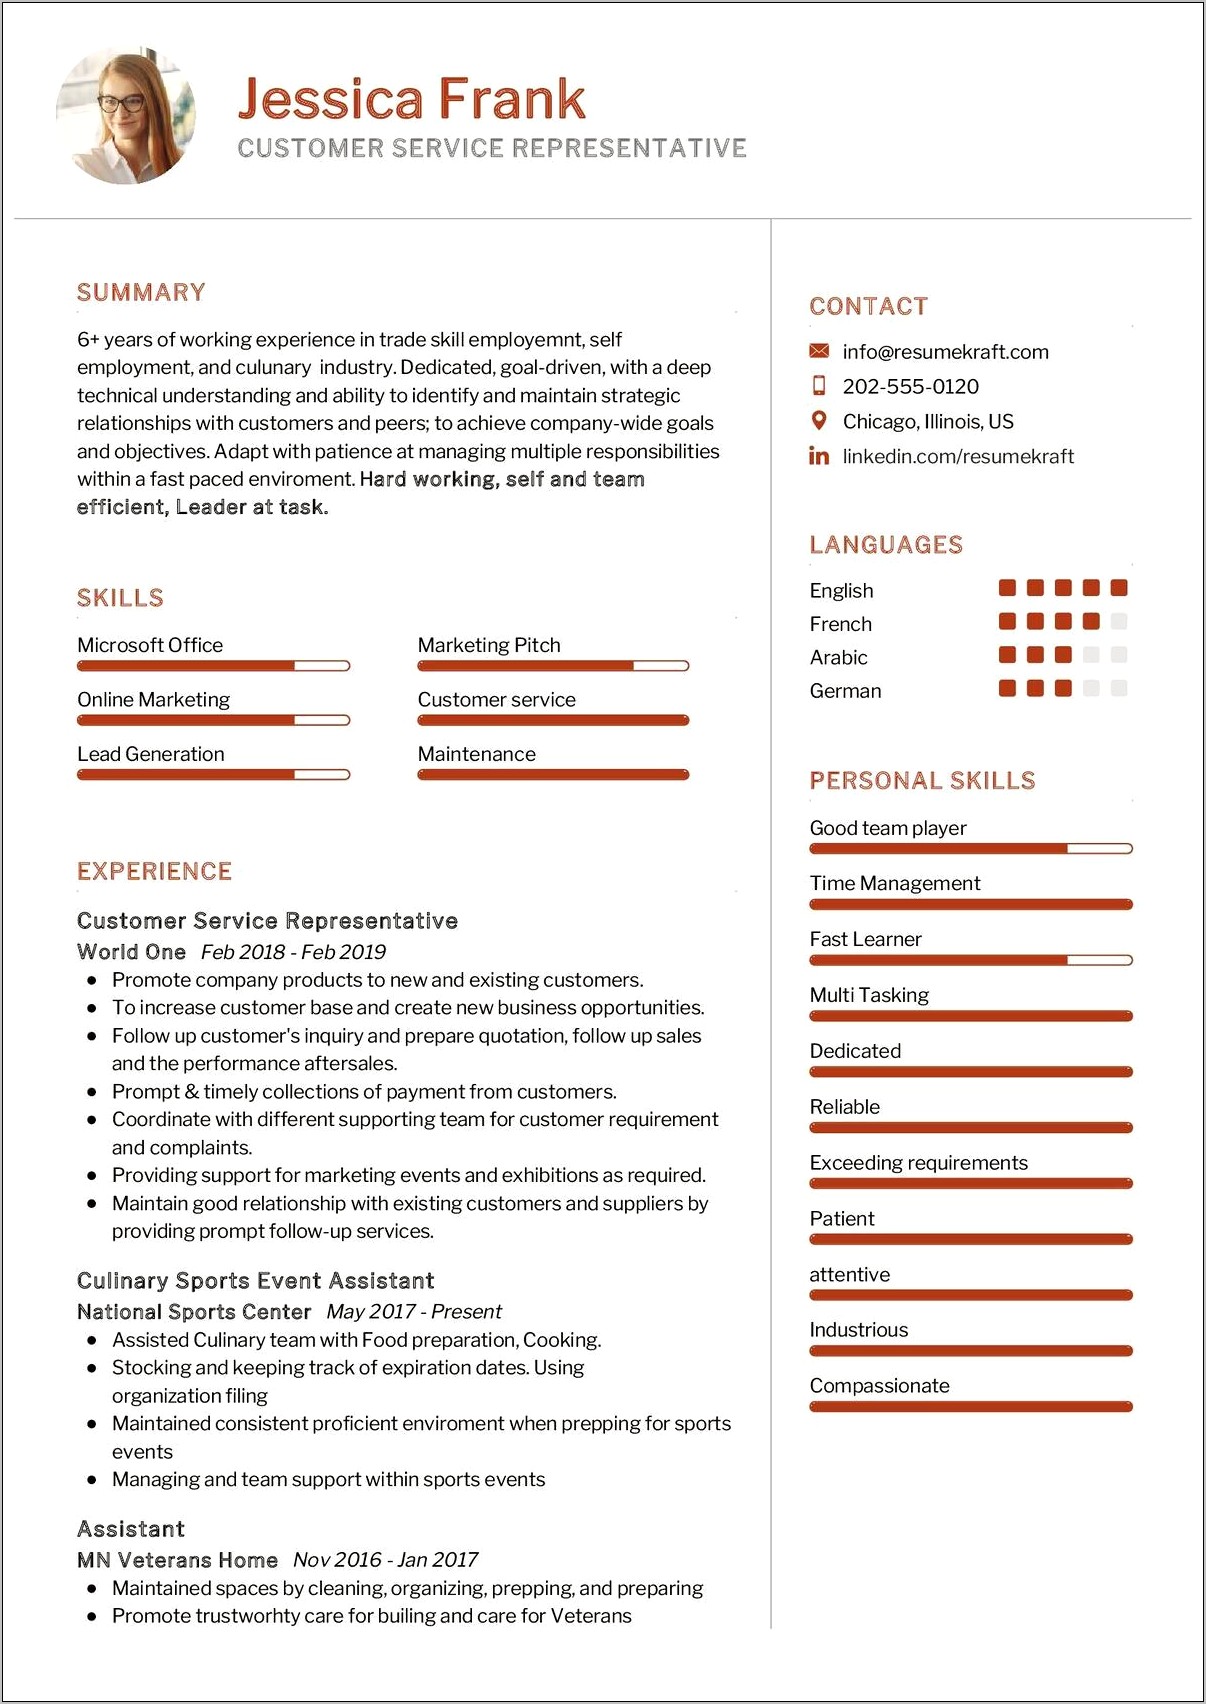 Resume Description Of Customer Service Representative